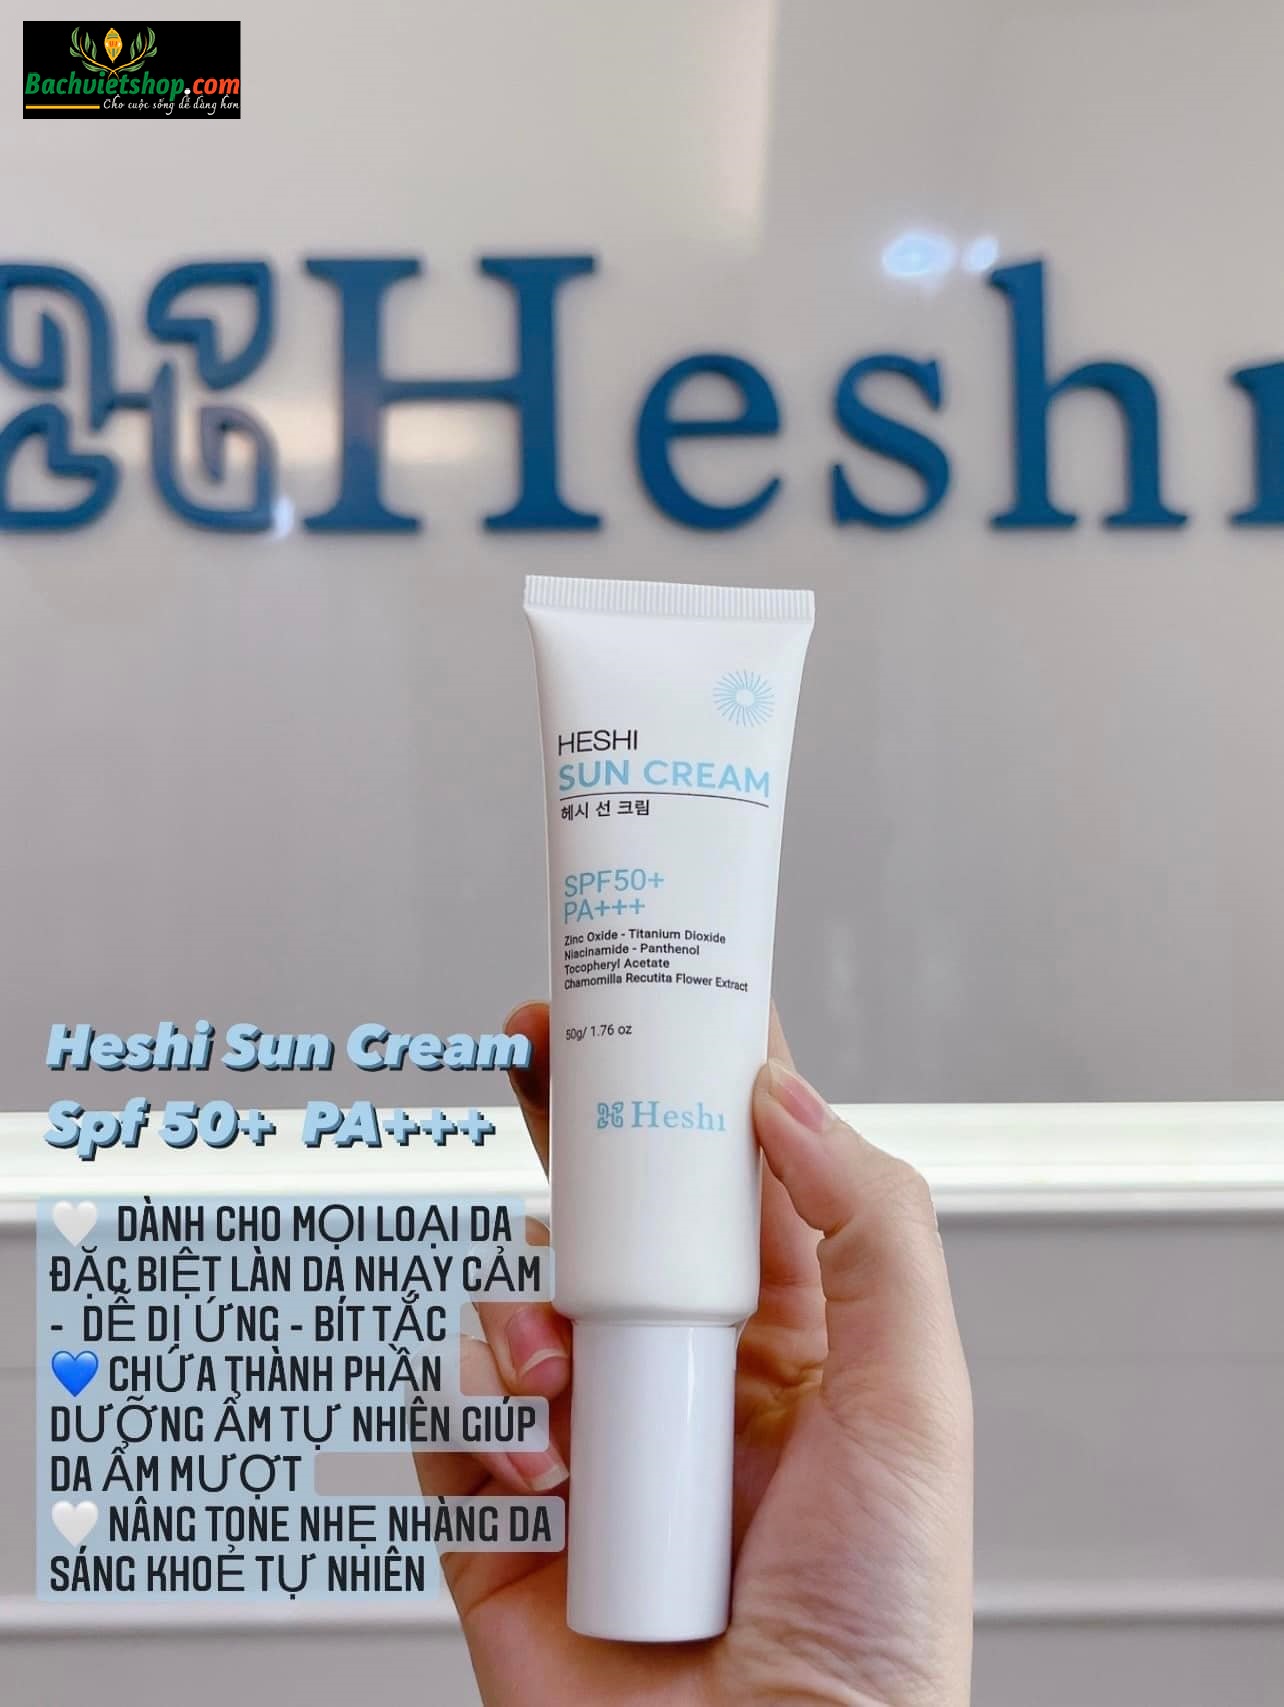 Kem chống nắng Heshi Sun Cream với kết cấu mỏng nhẹ, chứa các sắc tố tránh để lại cặn trắng, giảm thiểu khuyết điểm và mang lại tông màu tự nhiên!